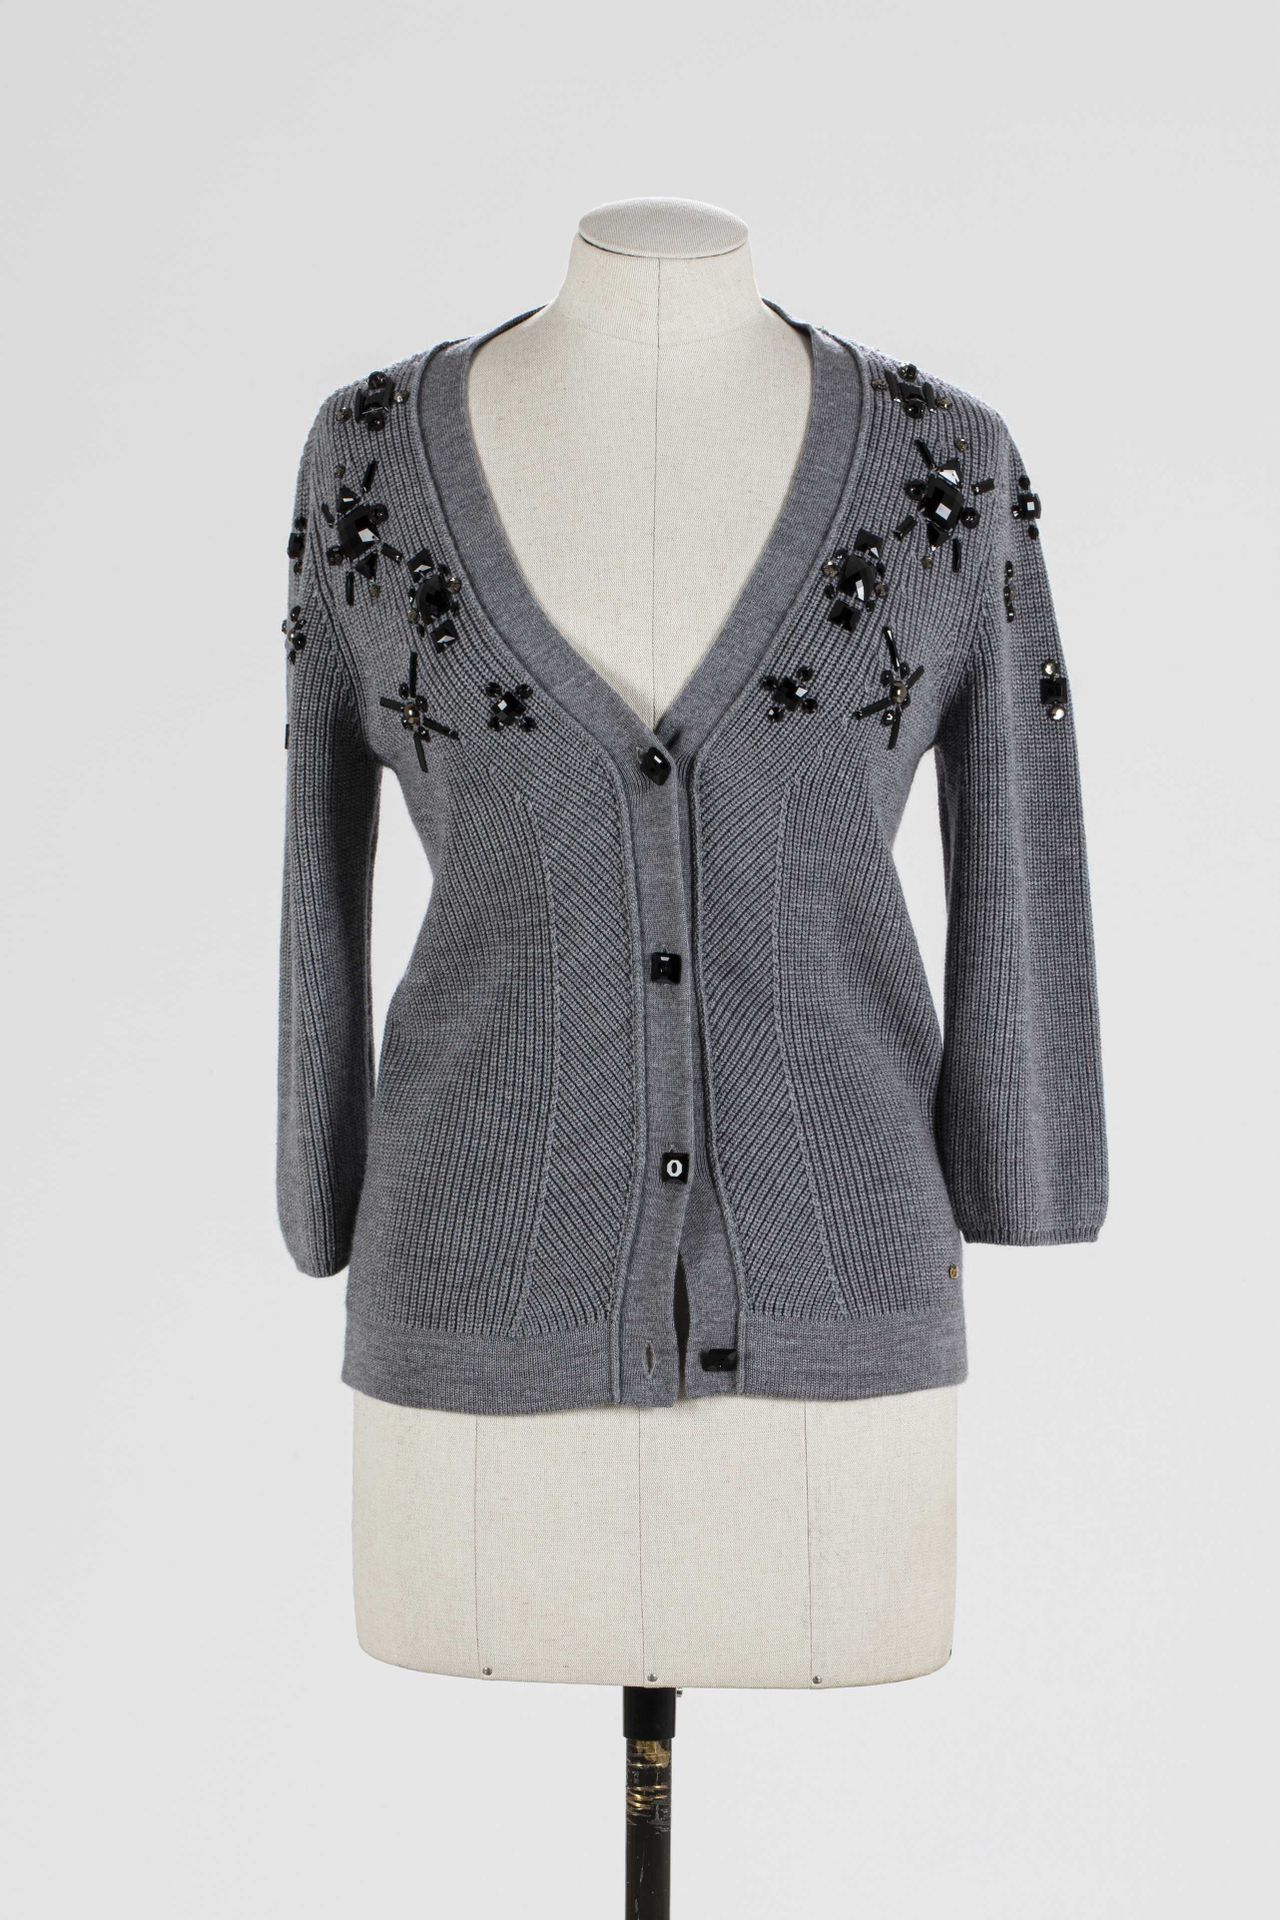 Null ESCADA：灰色羊毛马甲，镶嵌黑色和银色金属水钻，单排扣，长袖。

T,36